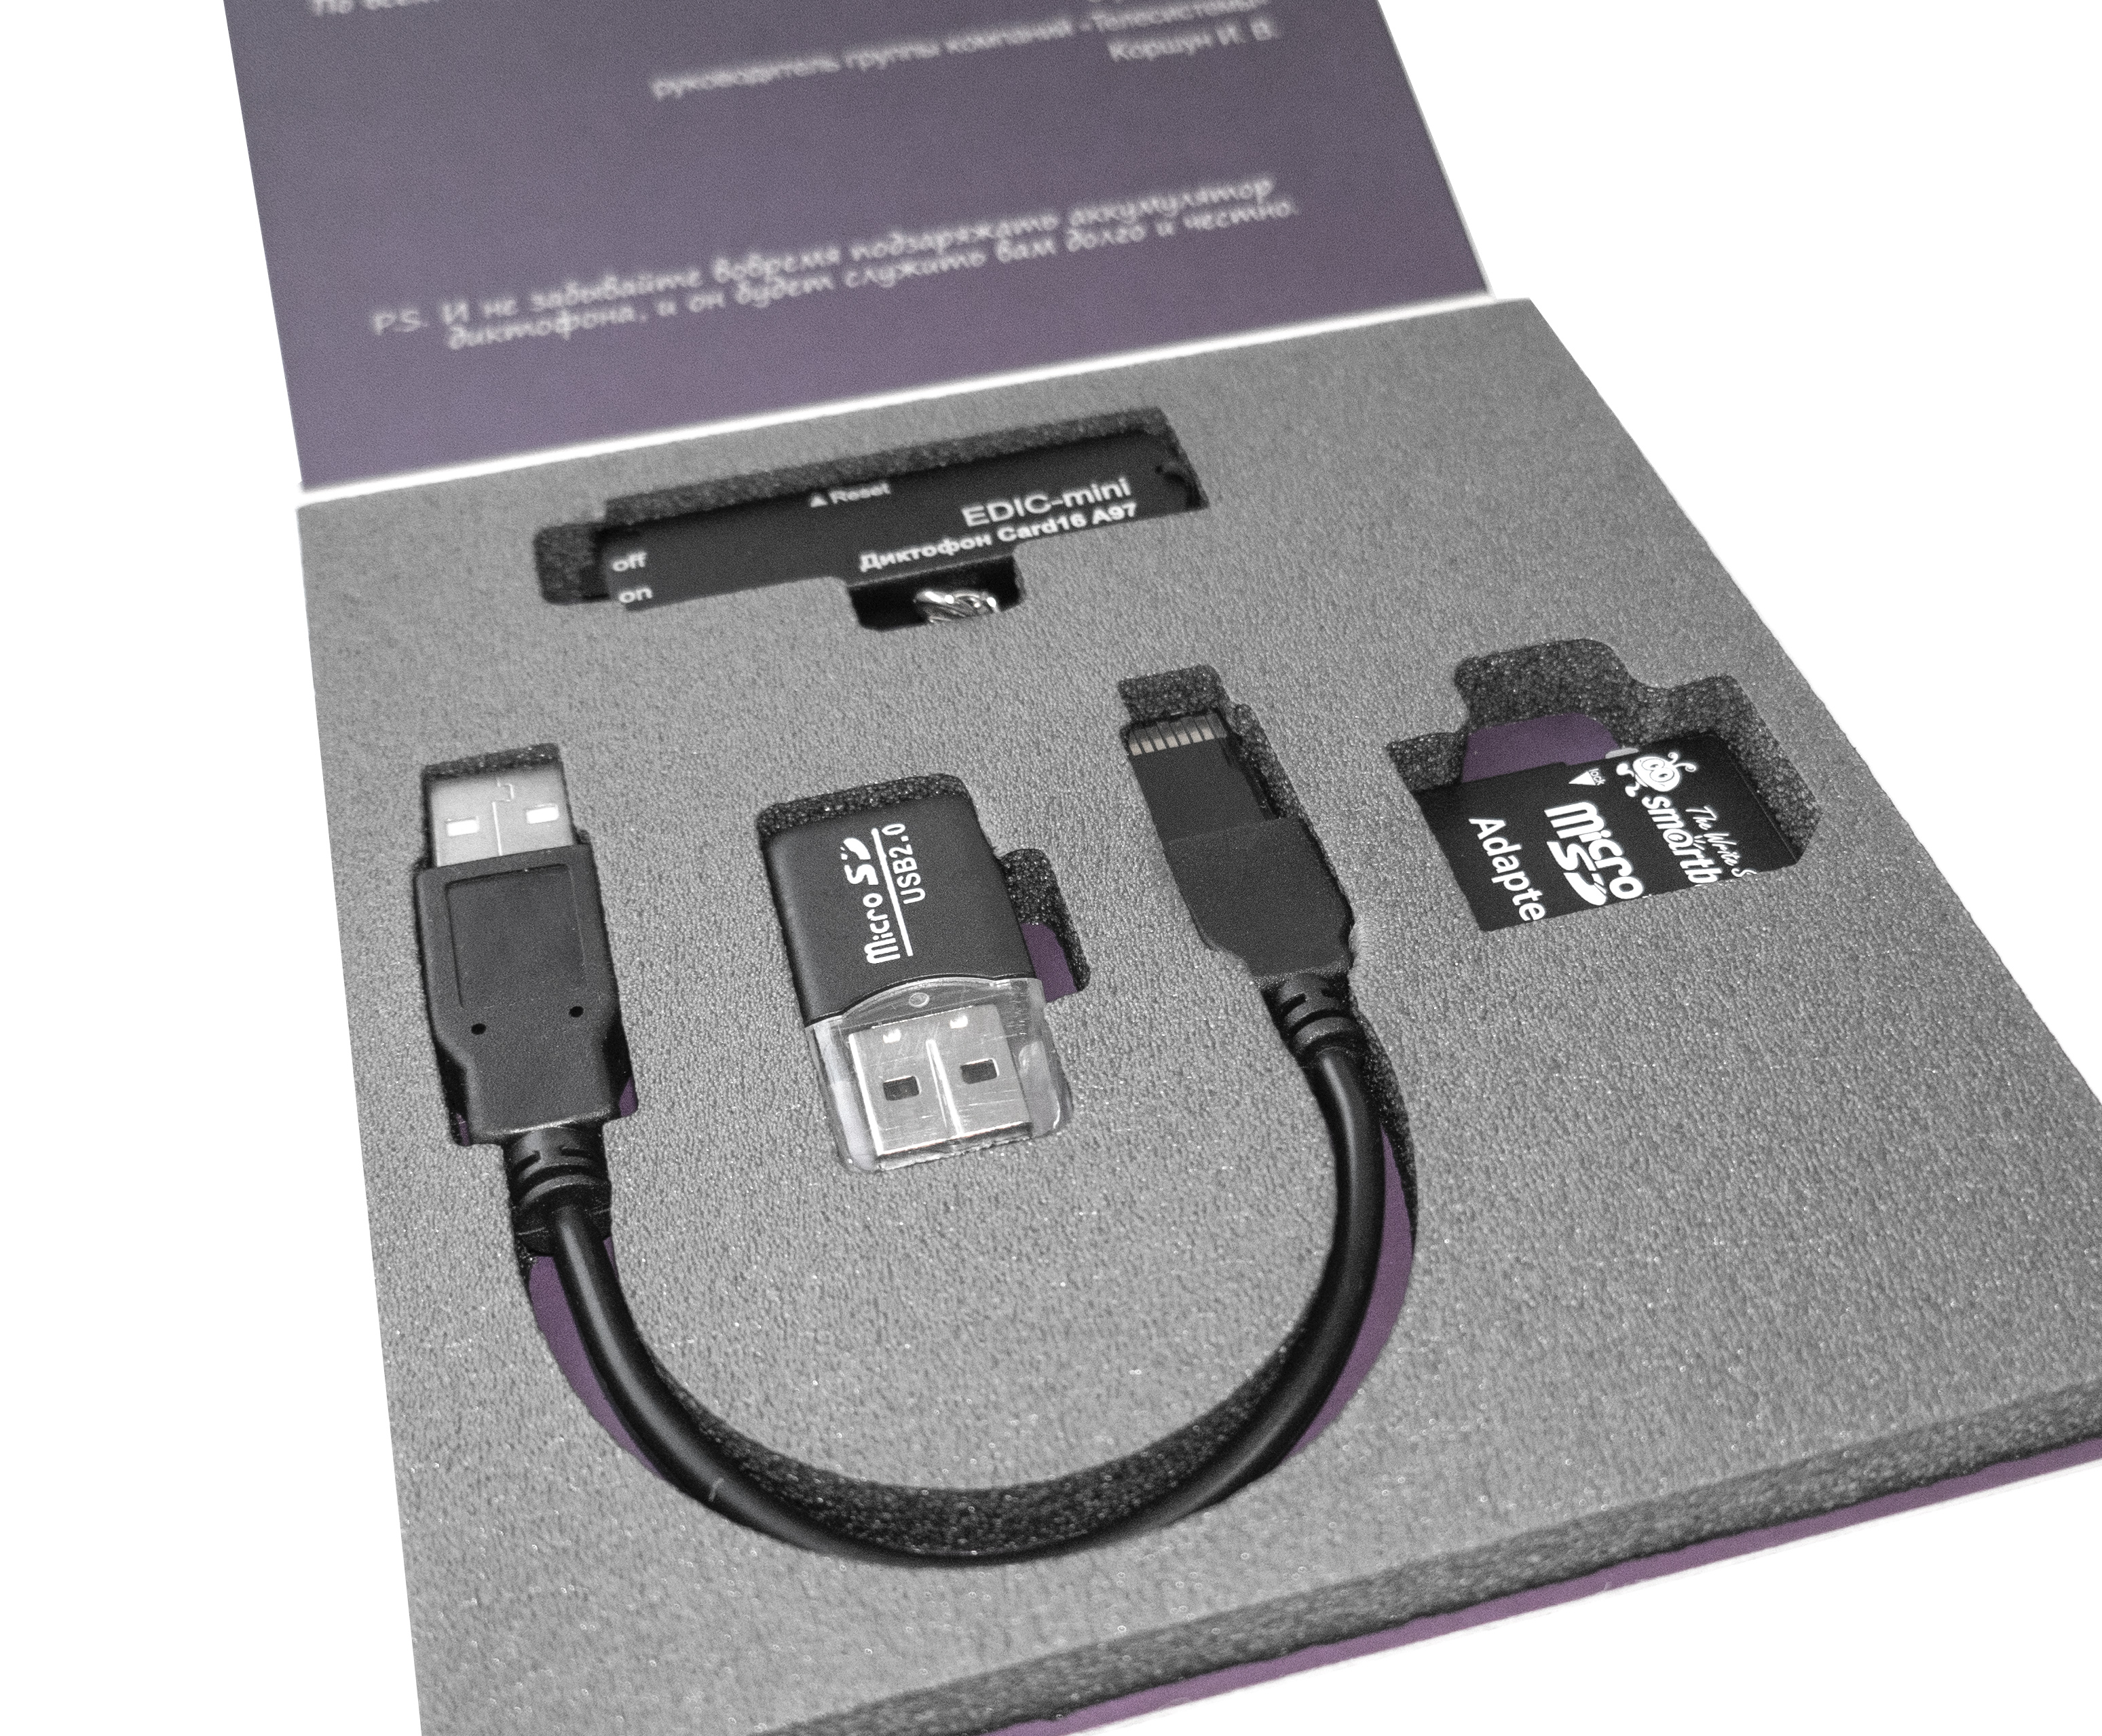 ТС Edic-mini CARD16 модель A97 диктофон цифровой